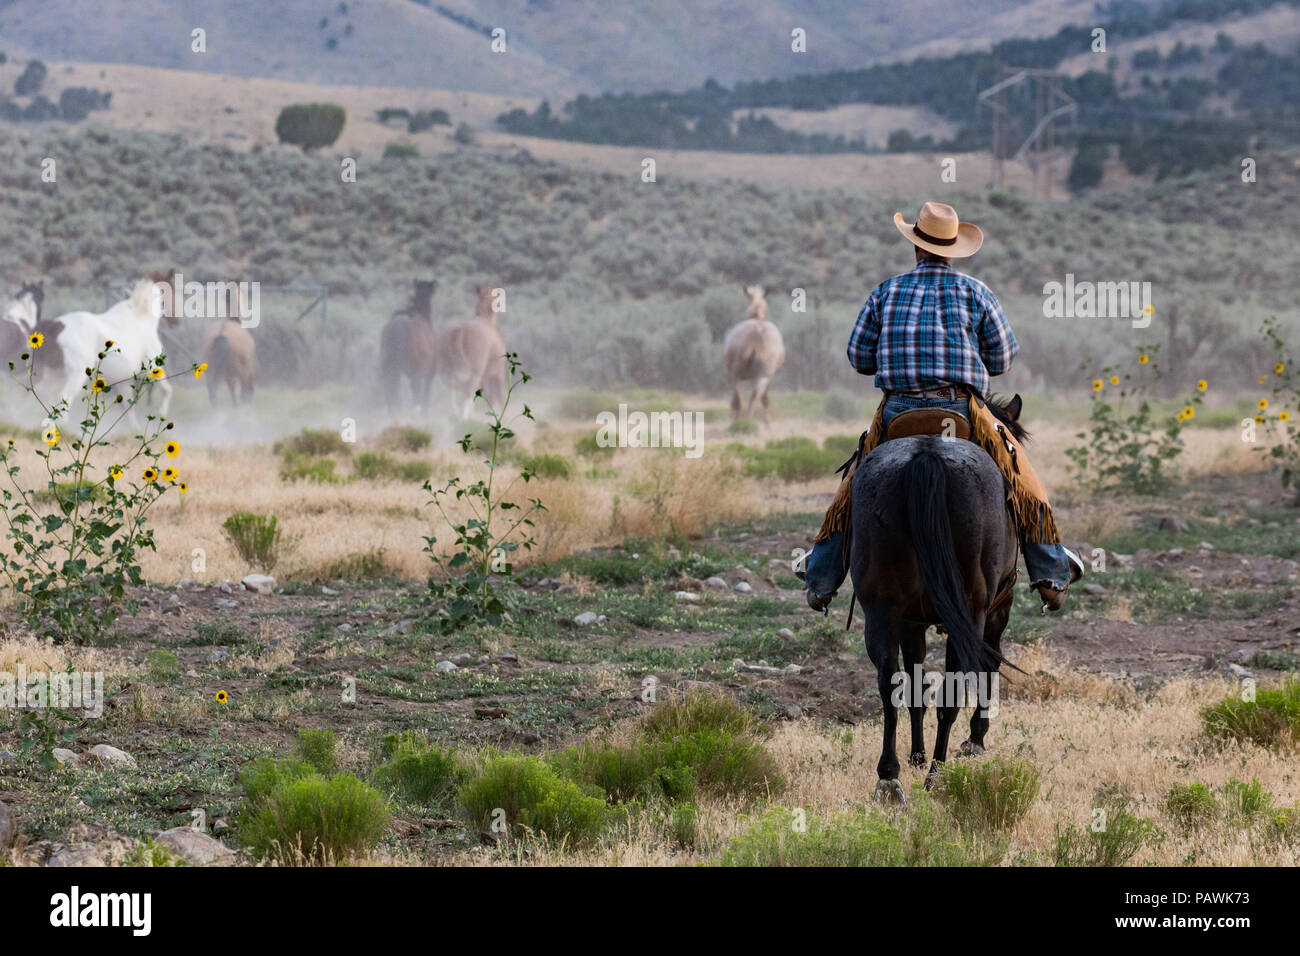 Ein einziger Cowboy reitet, um eine Horde in der trockenen, staubigen Landschaft Utahs zu umrunden. Stockfoto